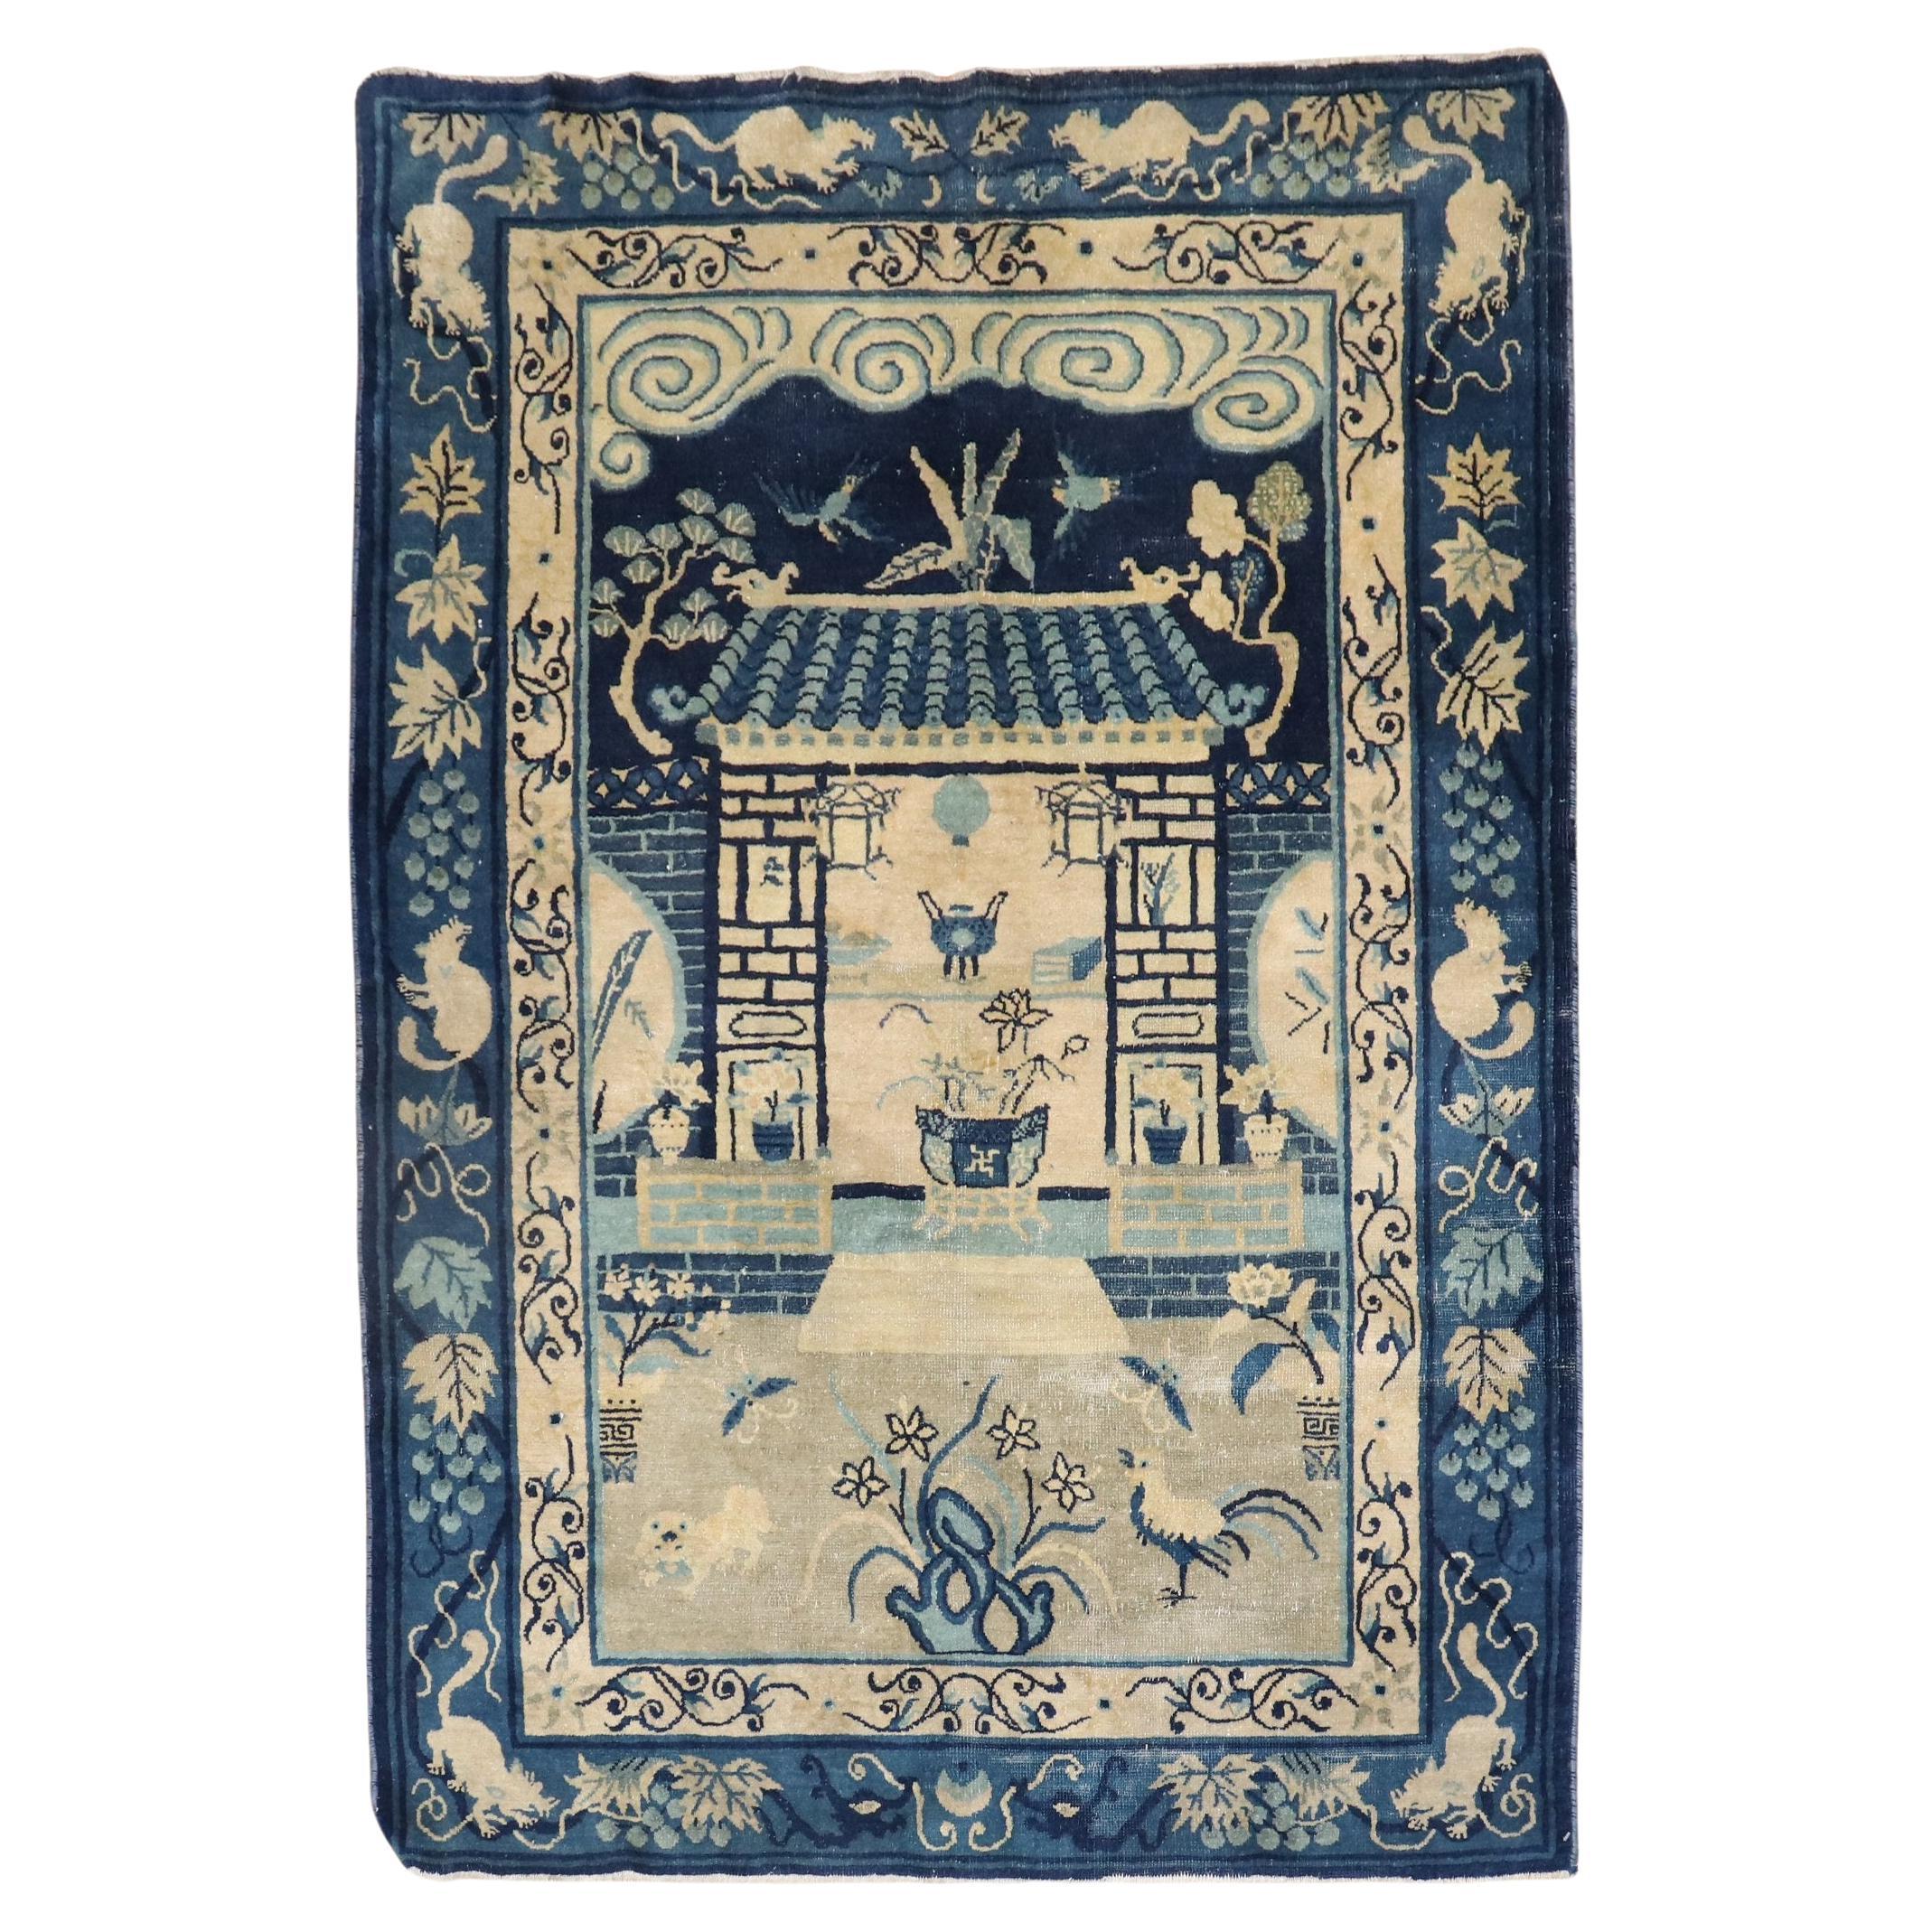 Tapis chinois oriental ancien du début du 20e siècle de la collection Zabihi, couleur bleu brun clair